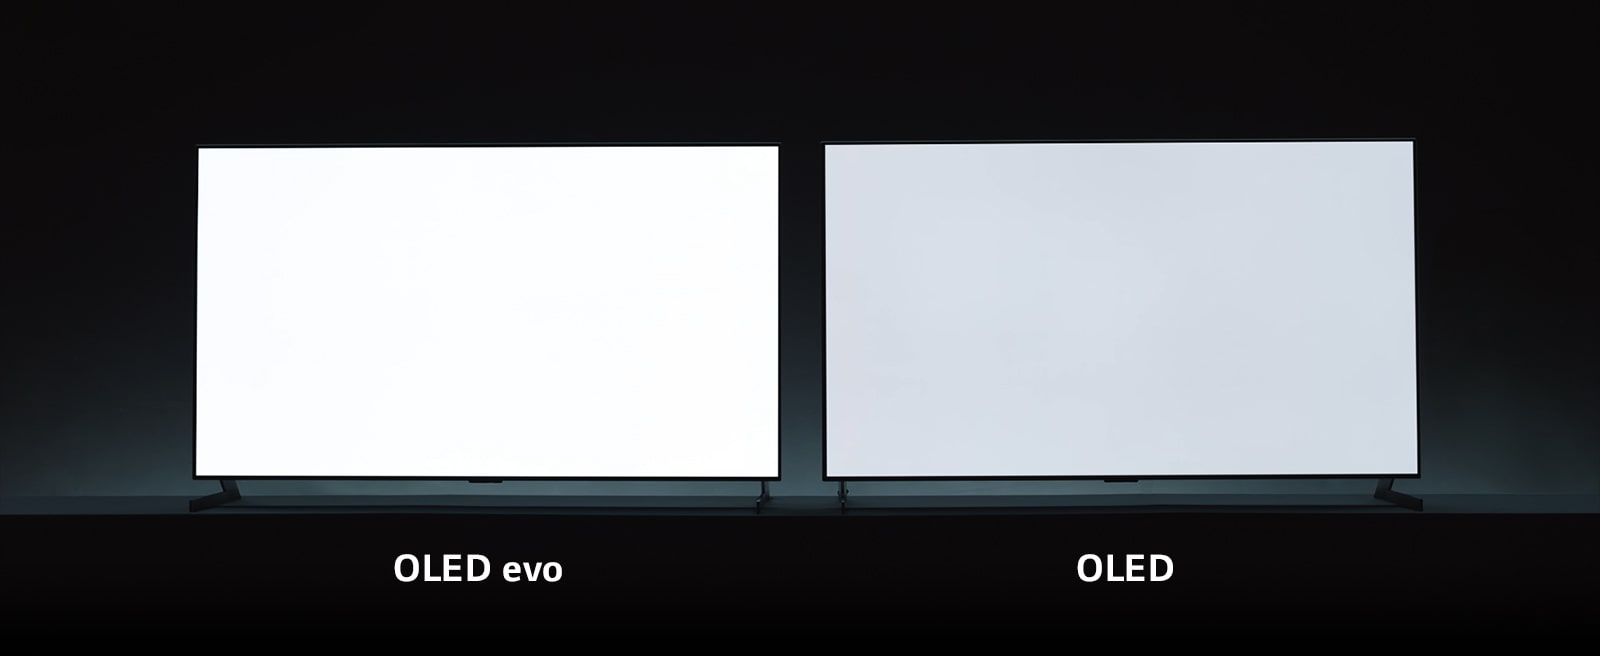 Сравнение яркости телевизоров OLED evo и OLED. Телевизор OLED evo, с более ярким, чем на OLED, белым изображением.